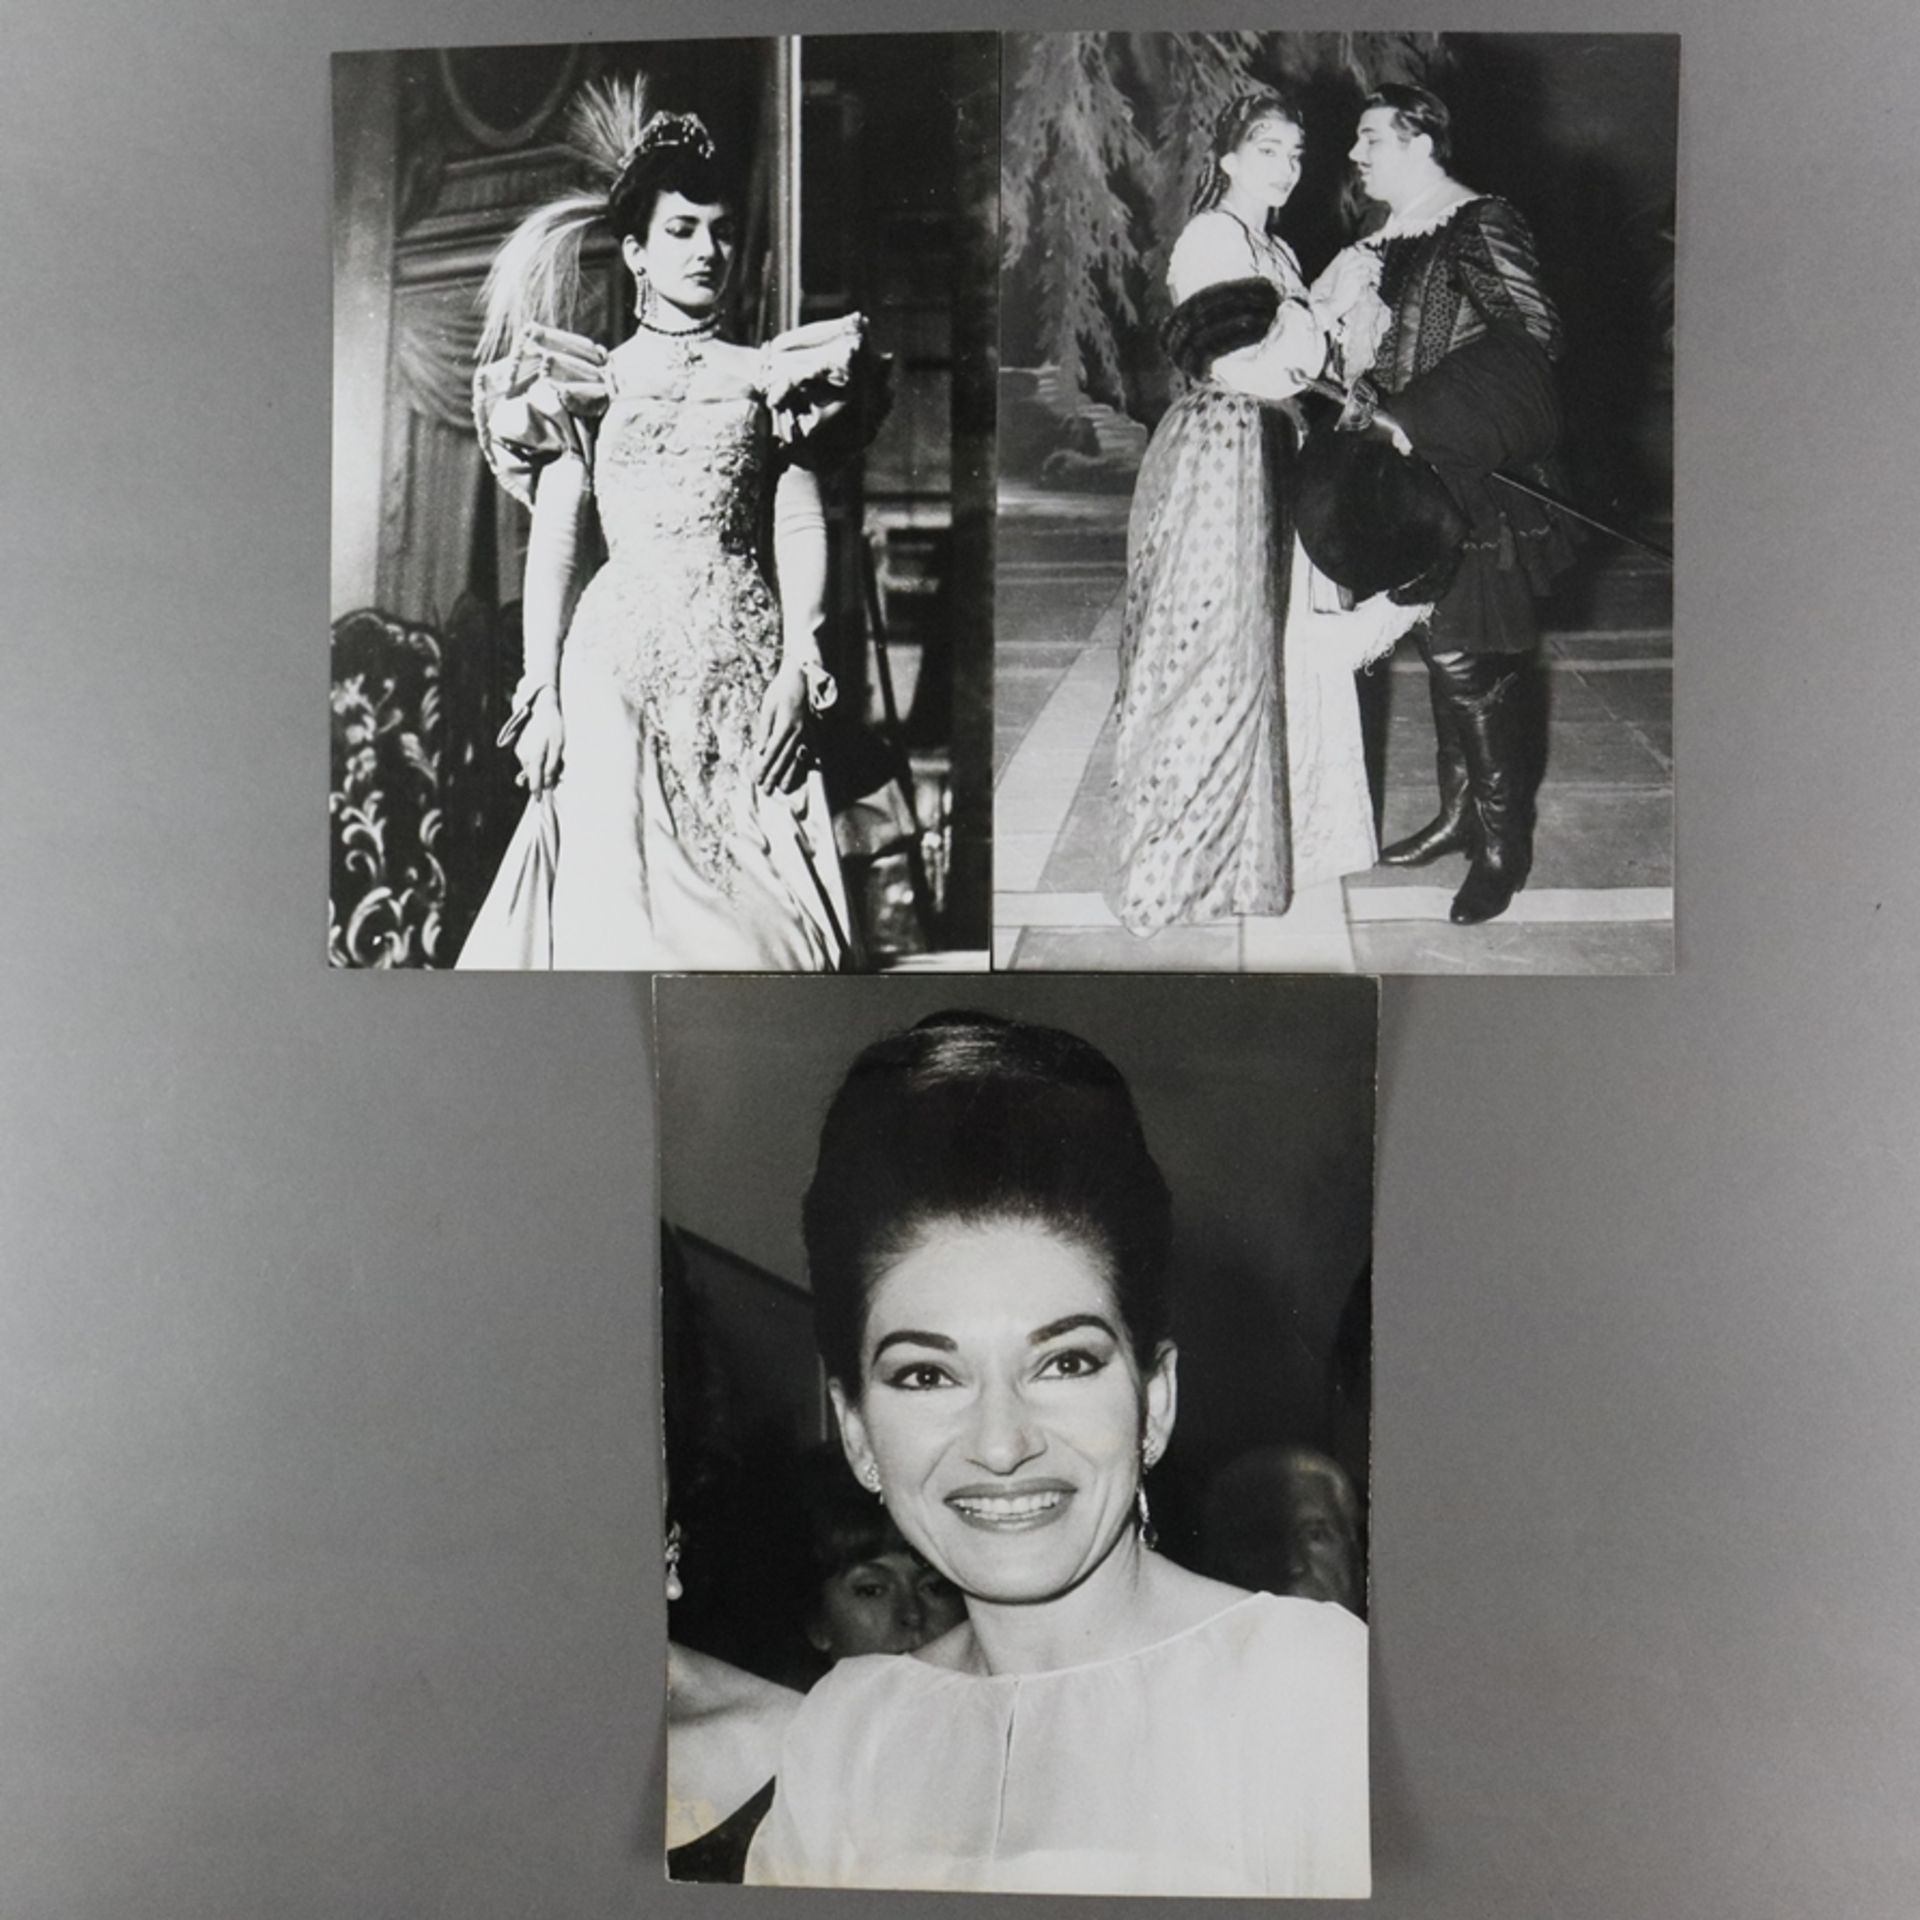 Konvolut: Drei Fotografien von Maria Callas - s/w Fotografien, verso handschriftlich bezeichnet "Lu